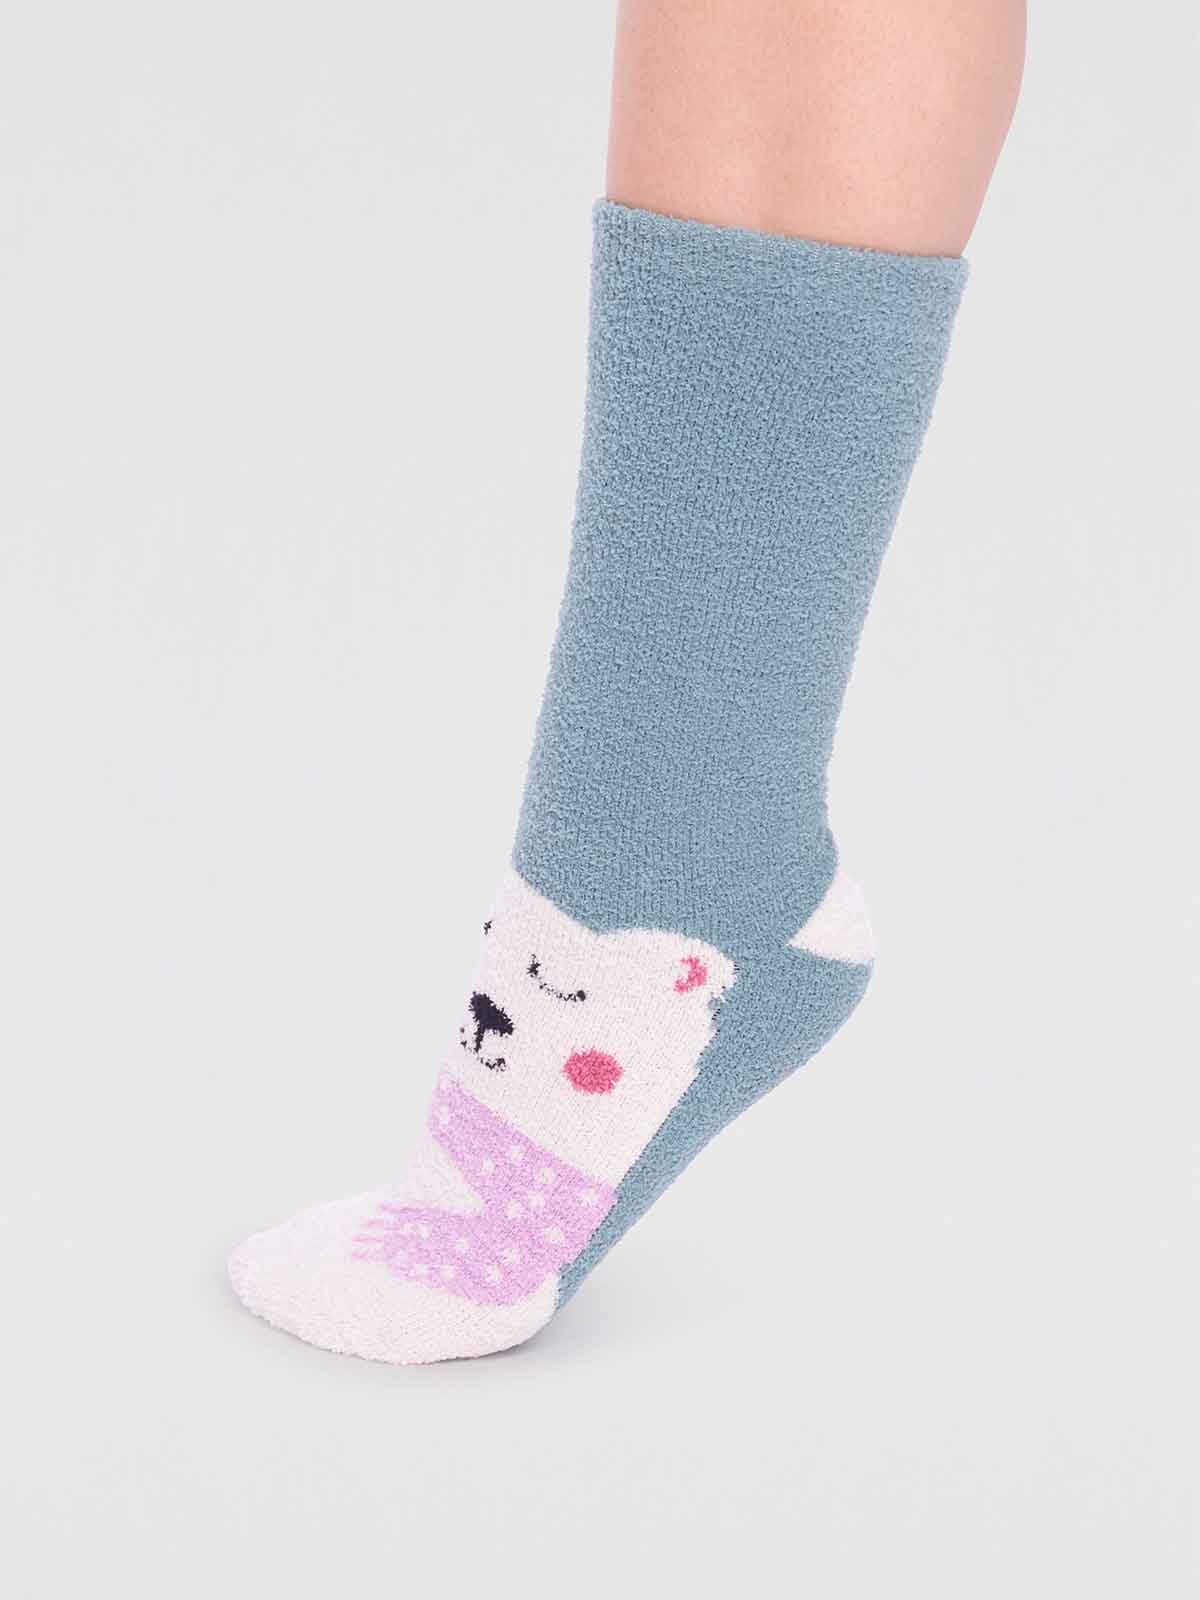 Polar Bear Bed Socks for Kids - The Sockery